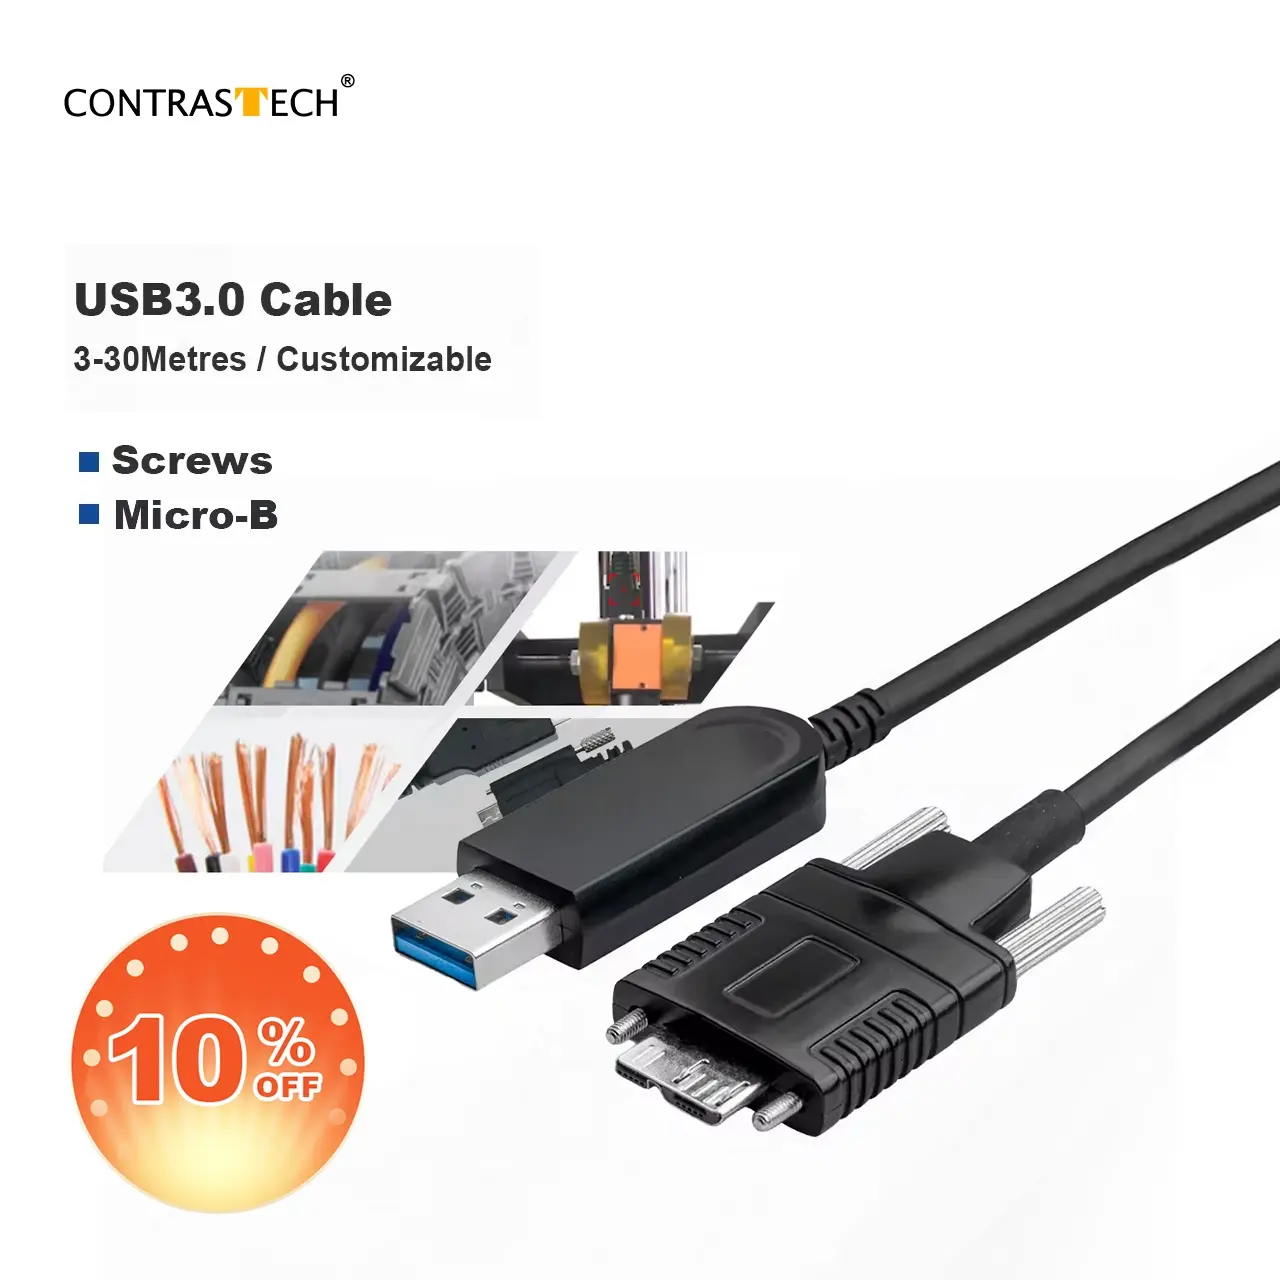 Kabel Data USB 3.0 kecepatan tinggi, kabel Data serat optik 3,m 5m 10m 30m Untuk kamera penglihatan mesin